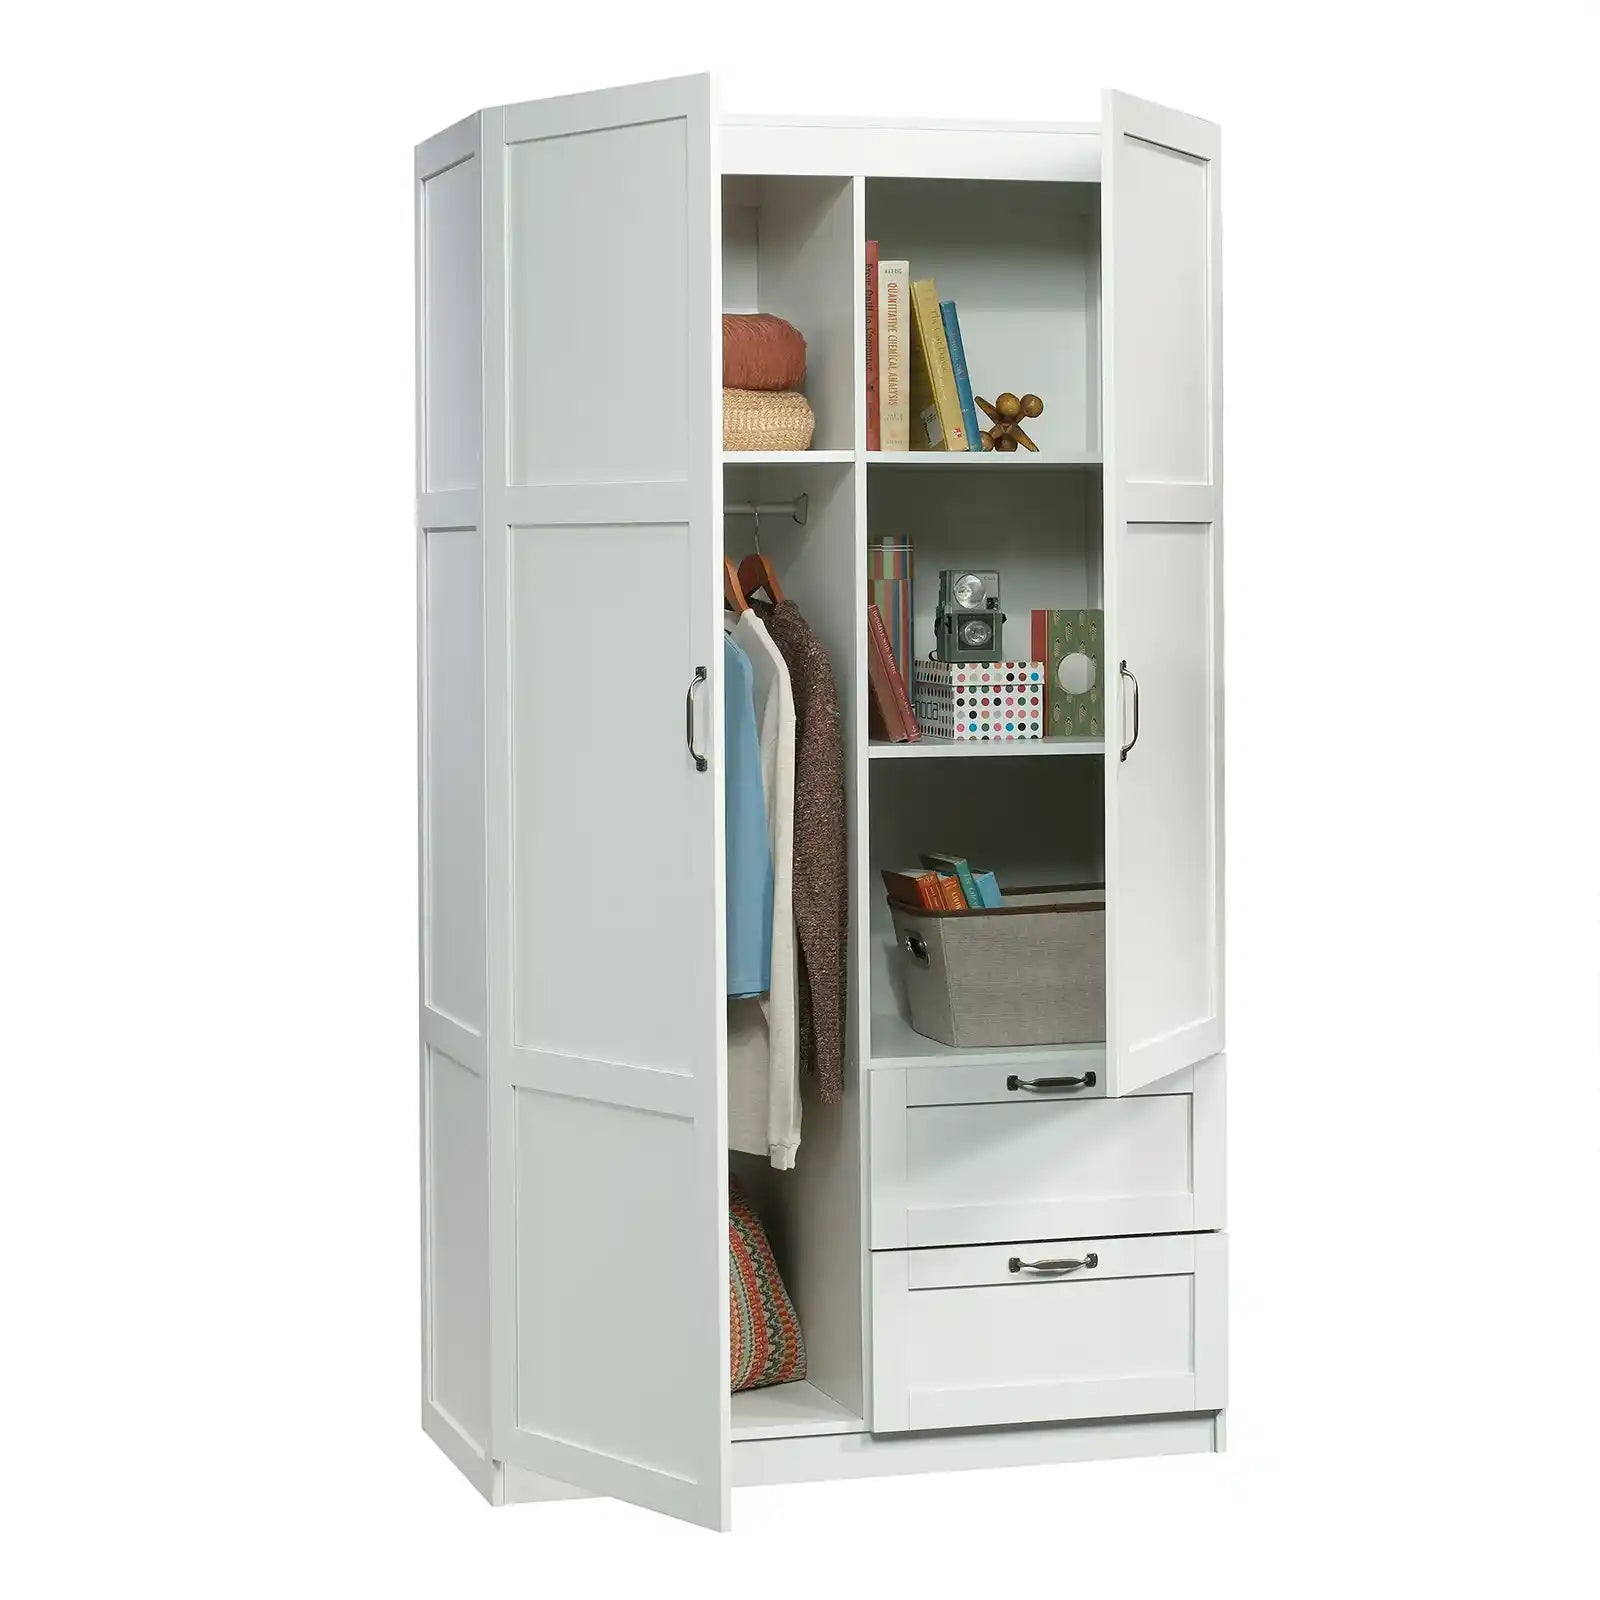 40" Wide Wardrobe Storage Cabinet